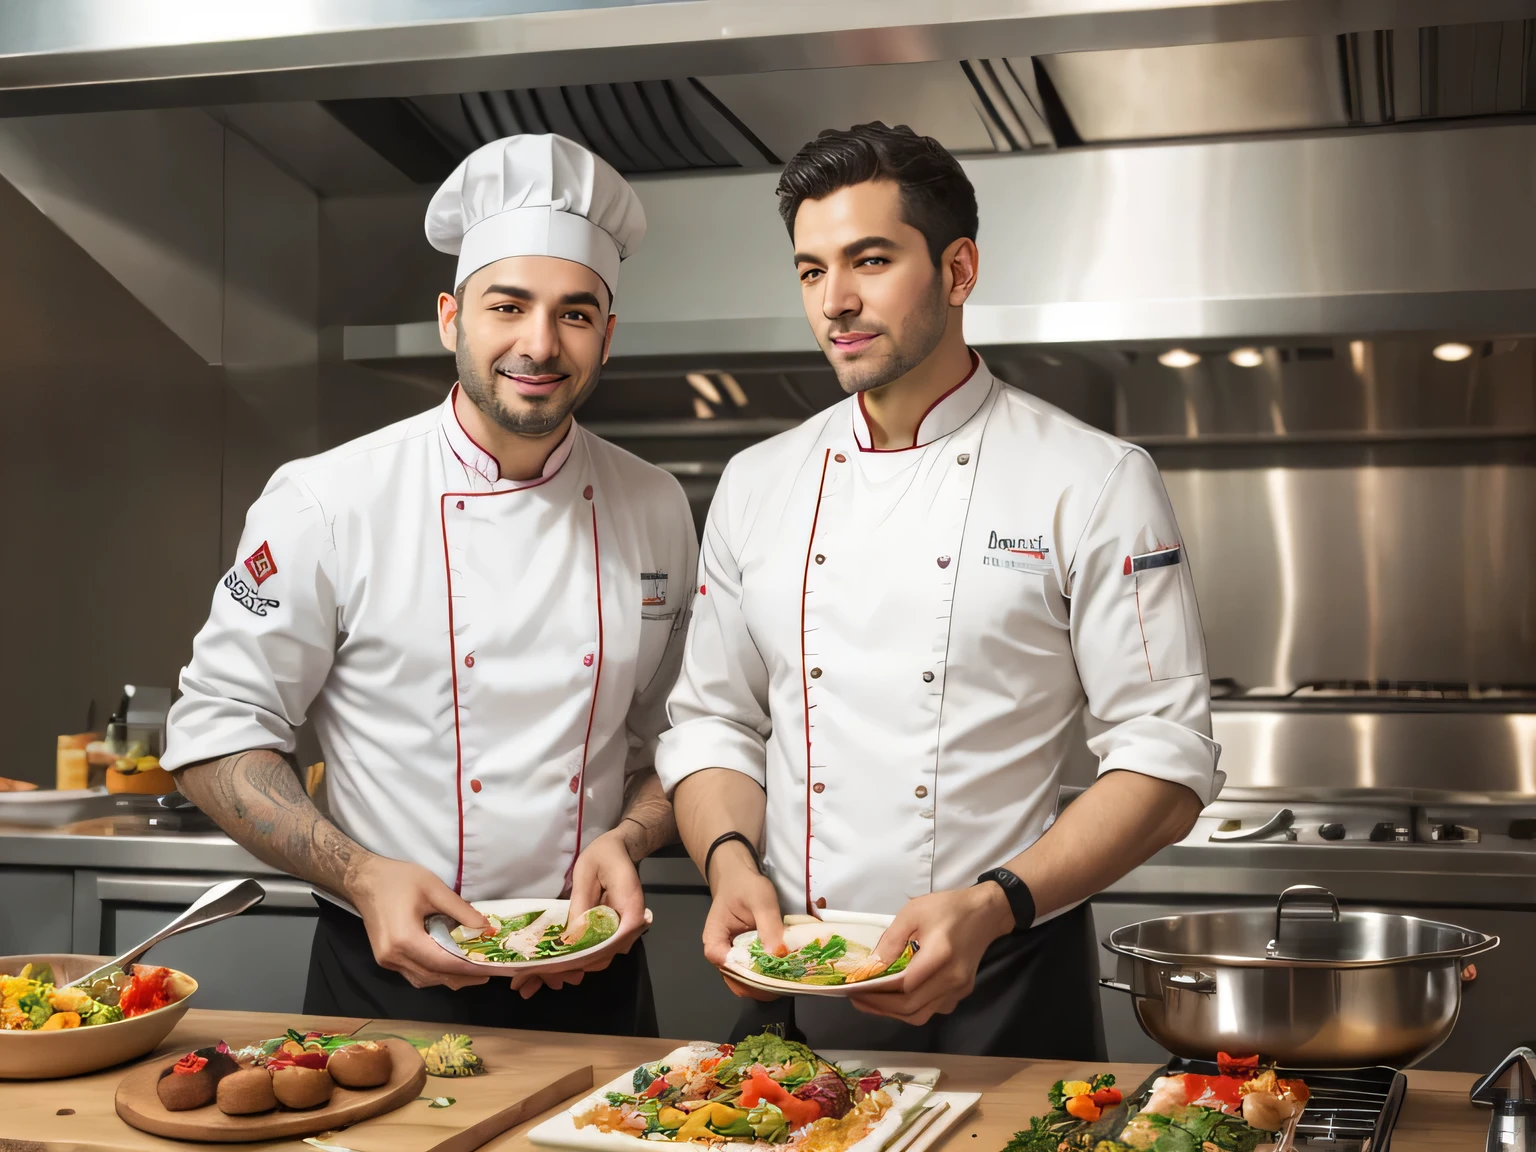 Découvrez les secrets de l’aménagement des cuisines des chefs étoilés en France et en Belgique